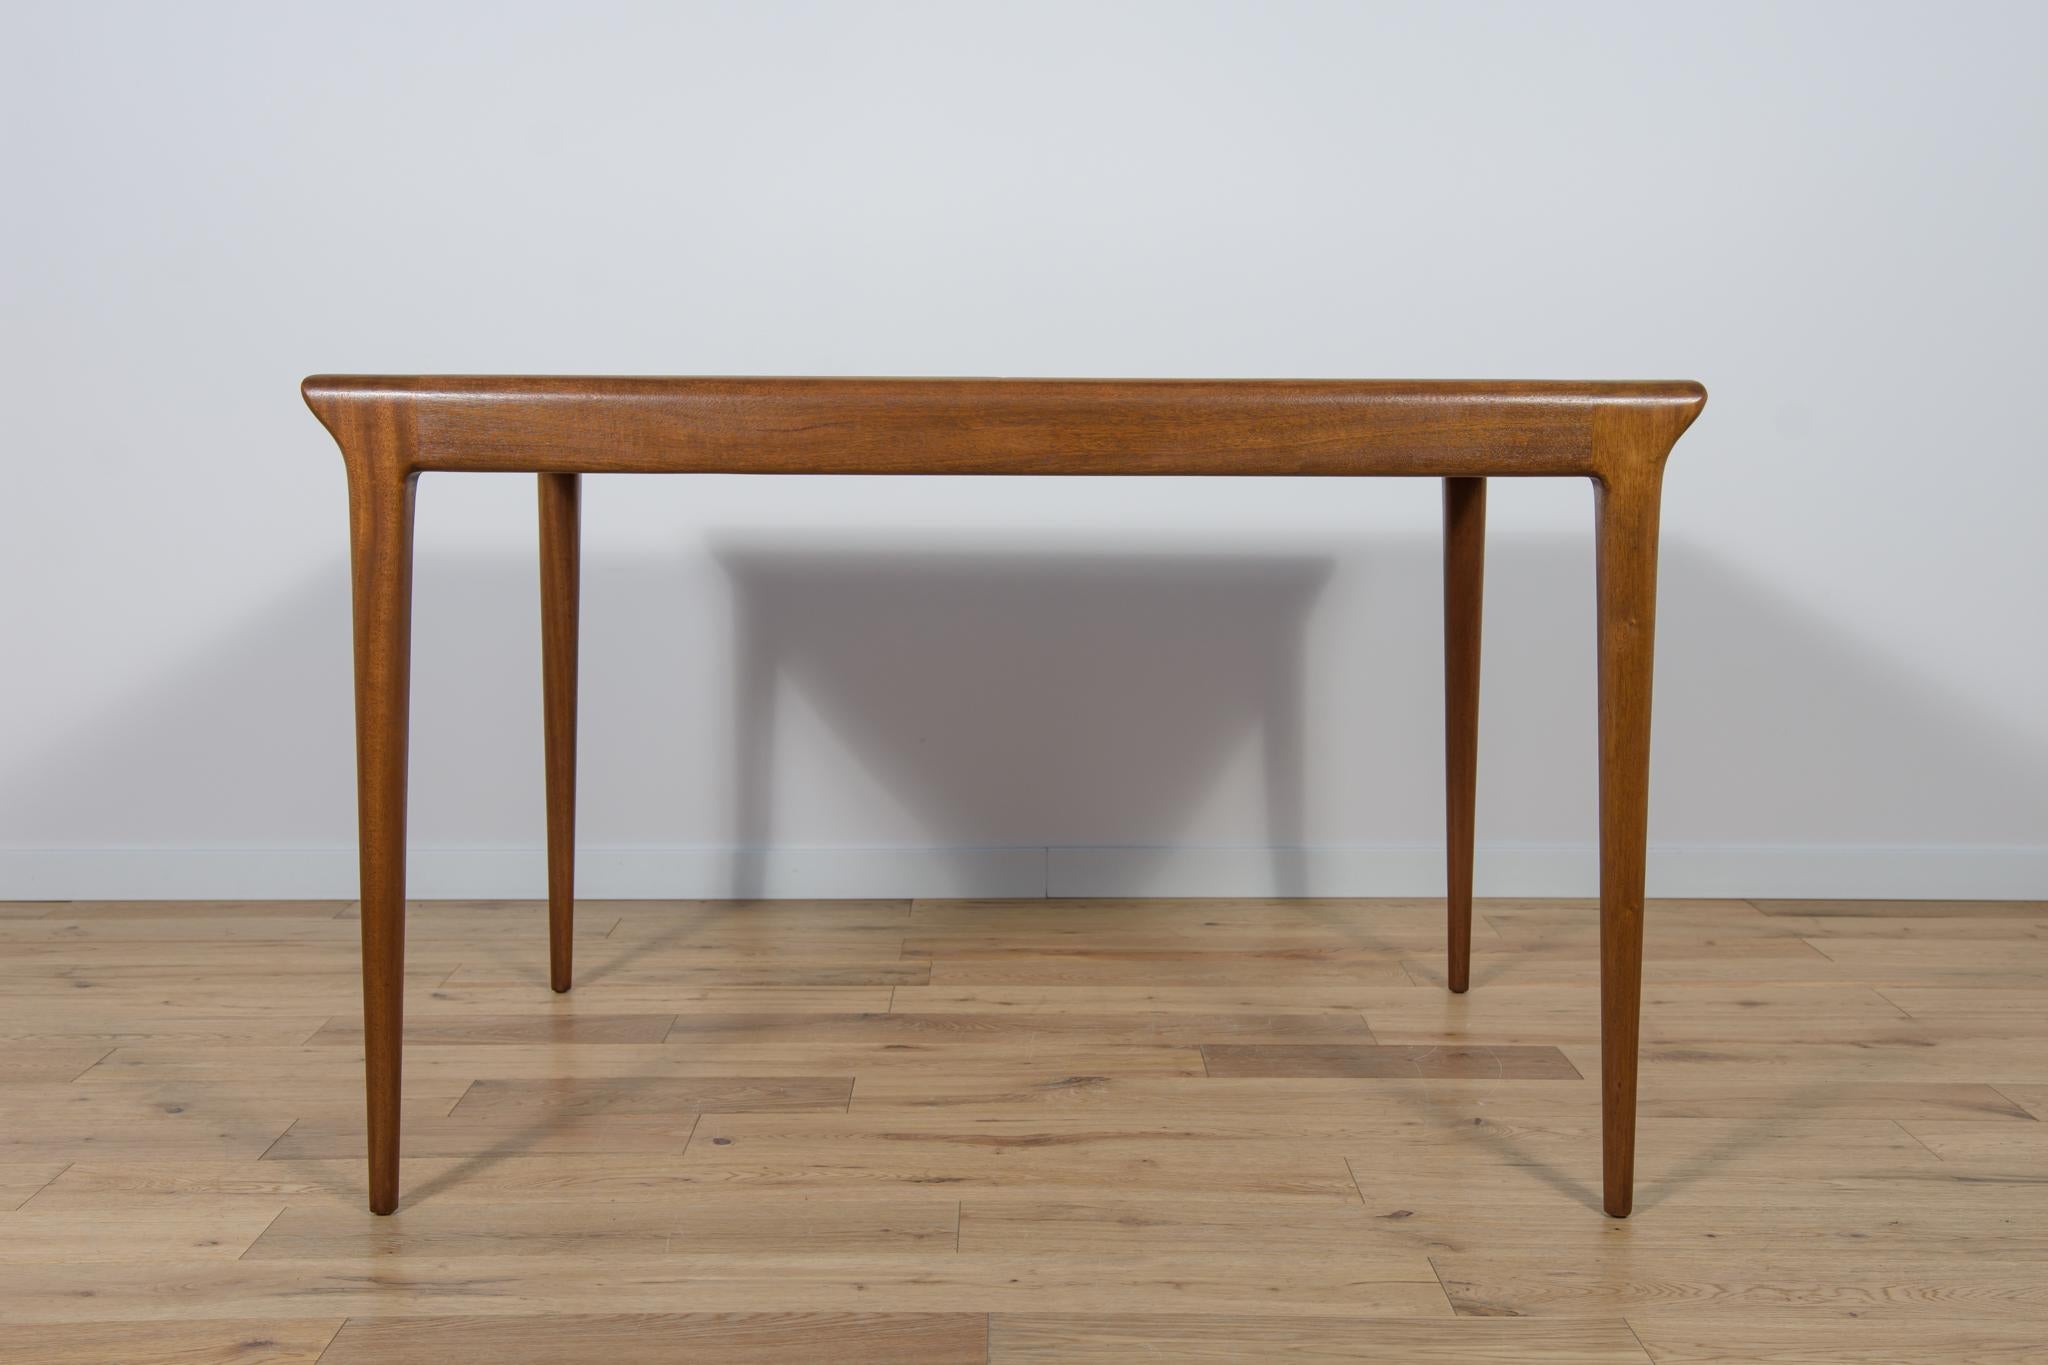 Ein rechteckiger Tisch mit einer leichten, erhabenen Form, hergestellt von der britischen Manufaktur McIntosh in den 1960er Jahren. Der Tisch ist aus Teakholz gefertigt, die Platte ist mit Zebranoholz furniert. Der Tisch verfügt über einen